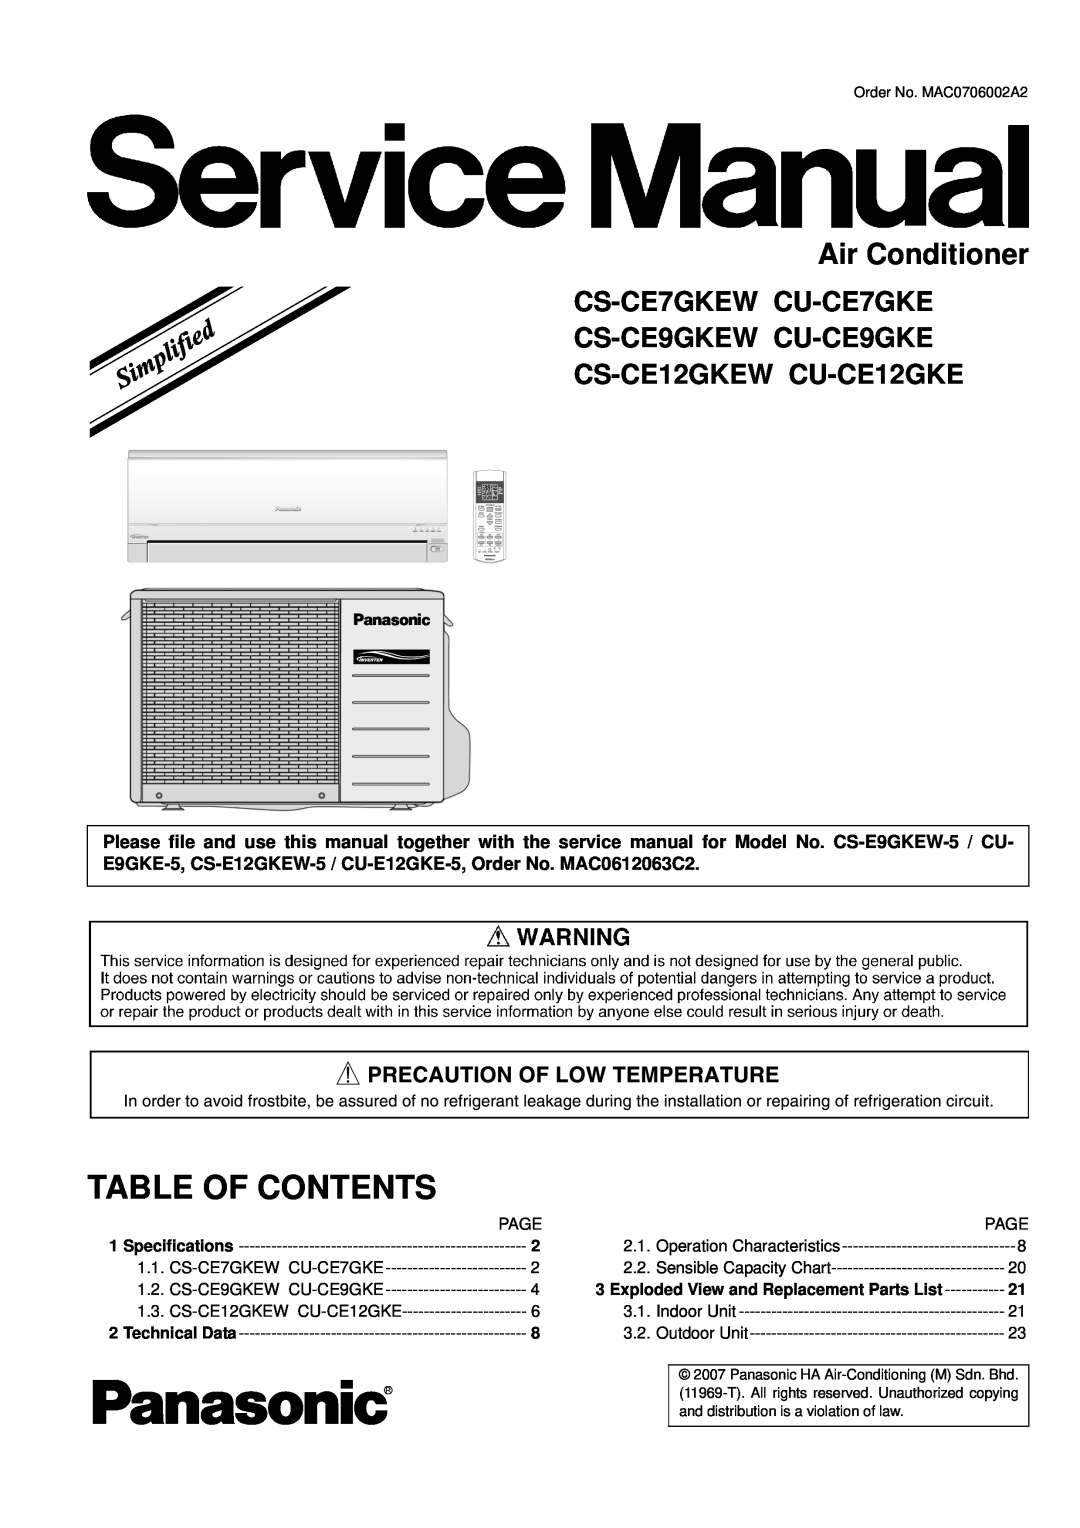 Panasonic CU-CE12GKE specifications Table Of Contents, Air Conditioner, CS-CE7GKEW CU-CE7GKE CS-CE9GKEW CU-CE9GKE 